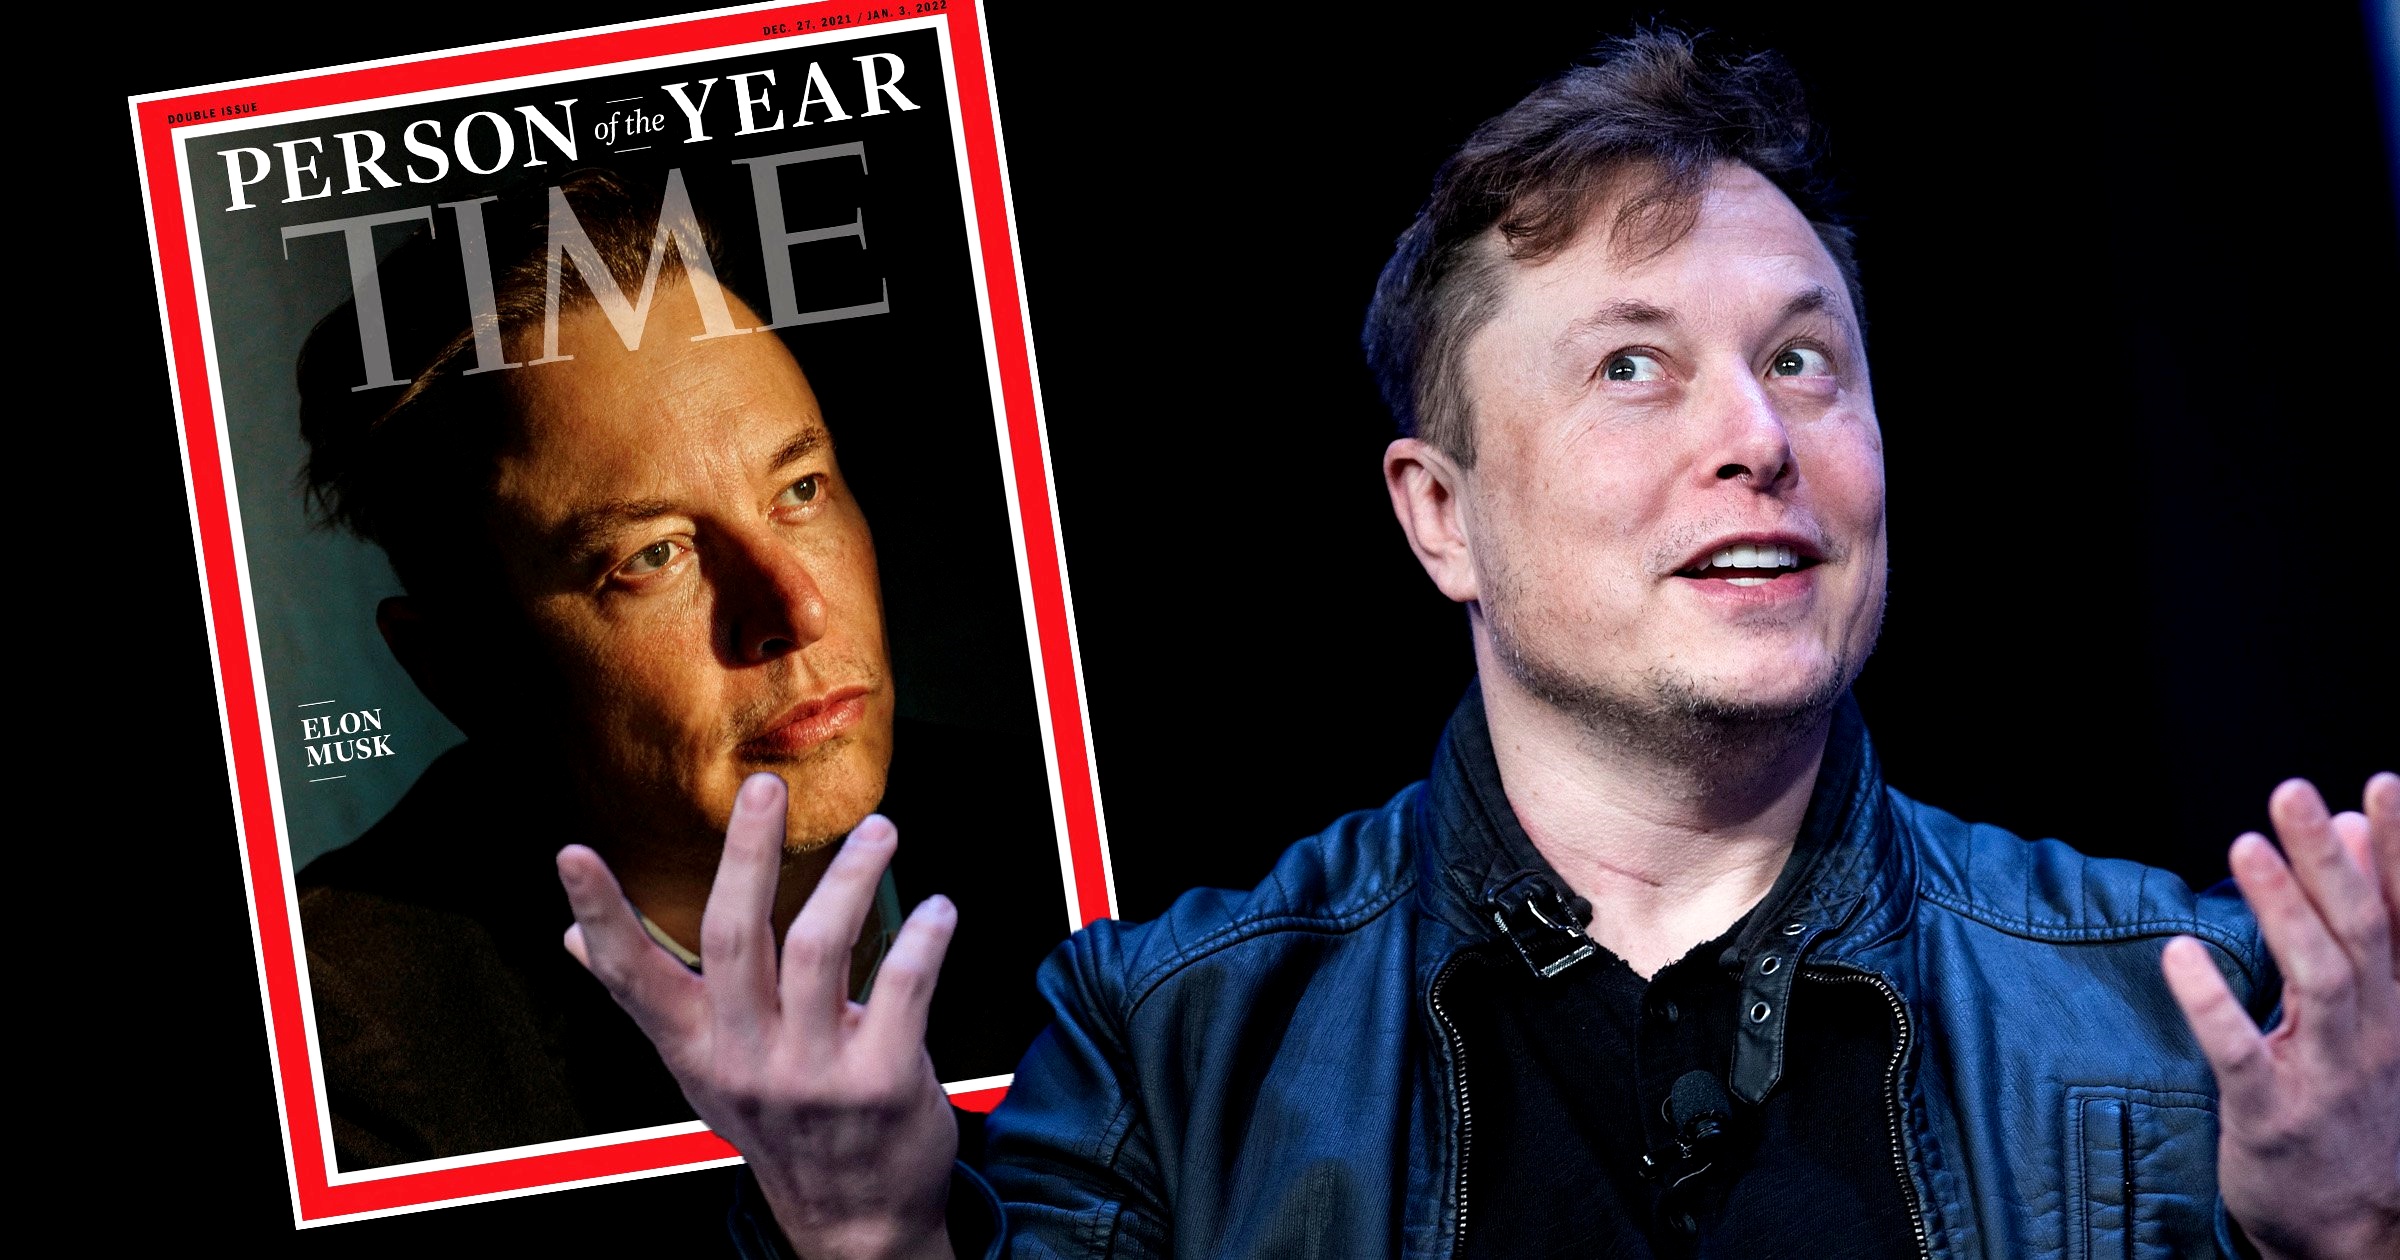 Elon Musk è la persona dell’anno 2021 per la rivista Time